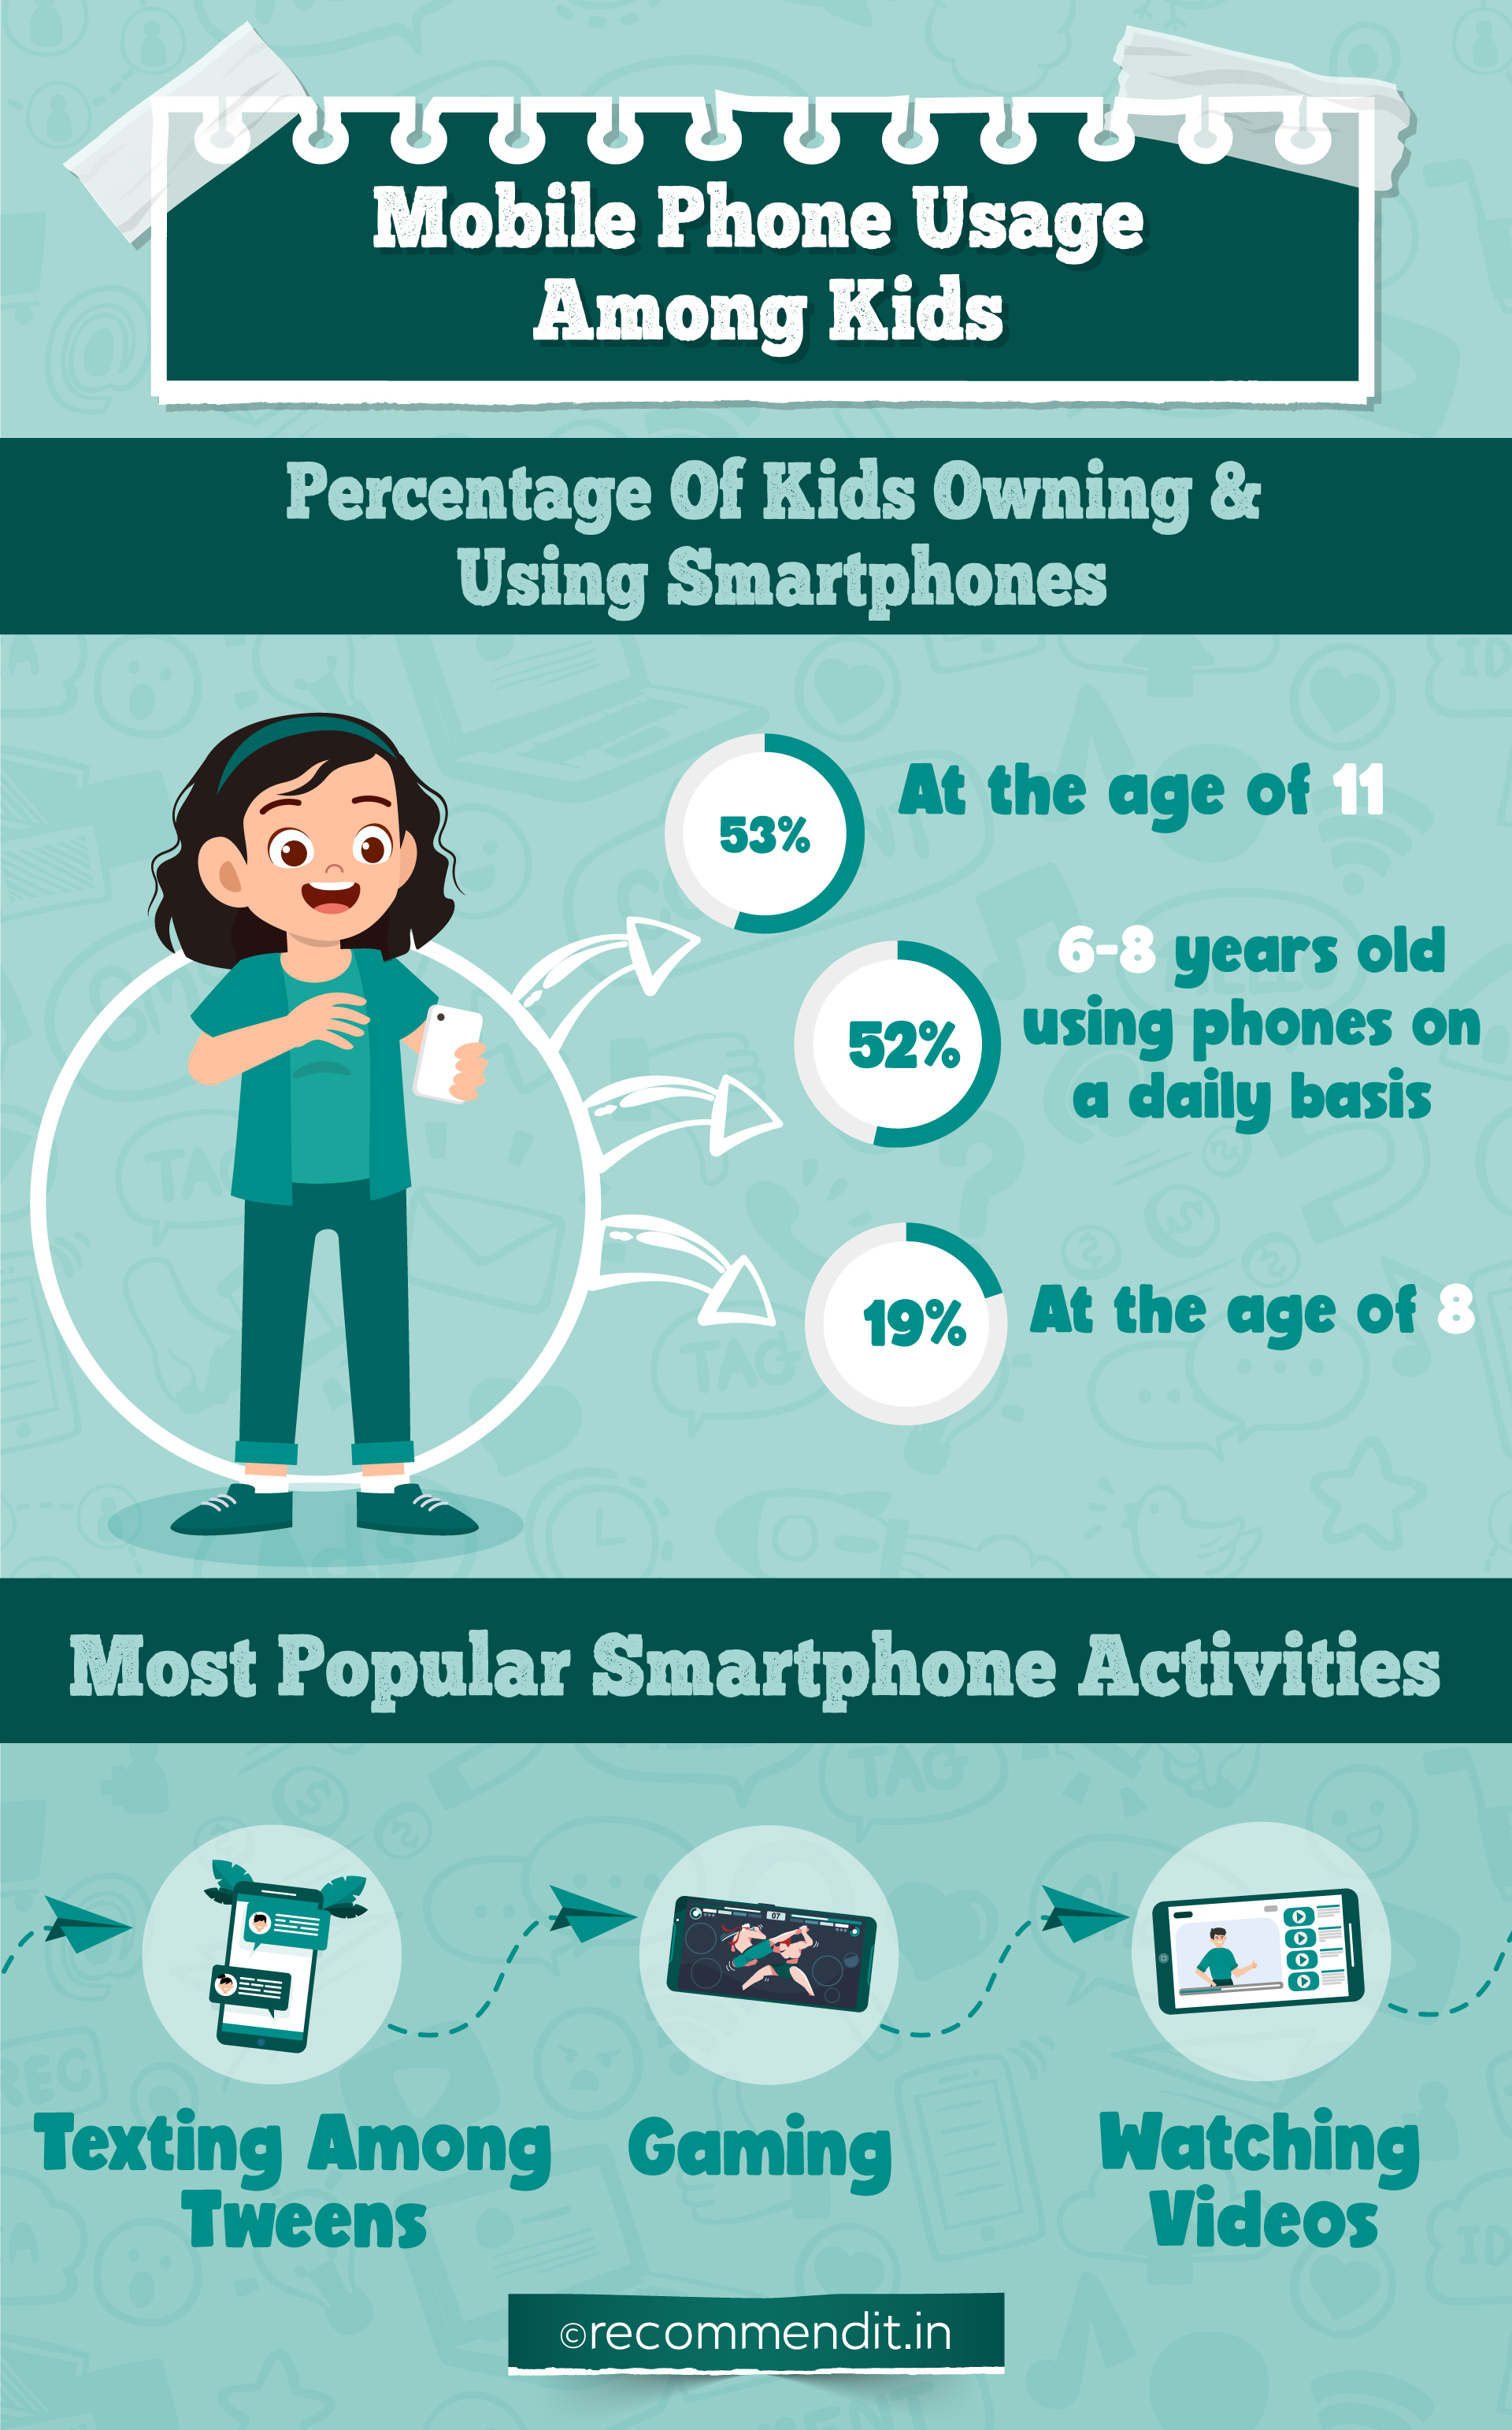 Mobile phone usage among kids